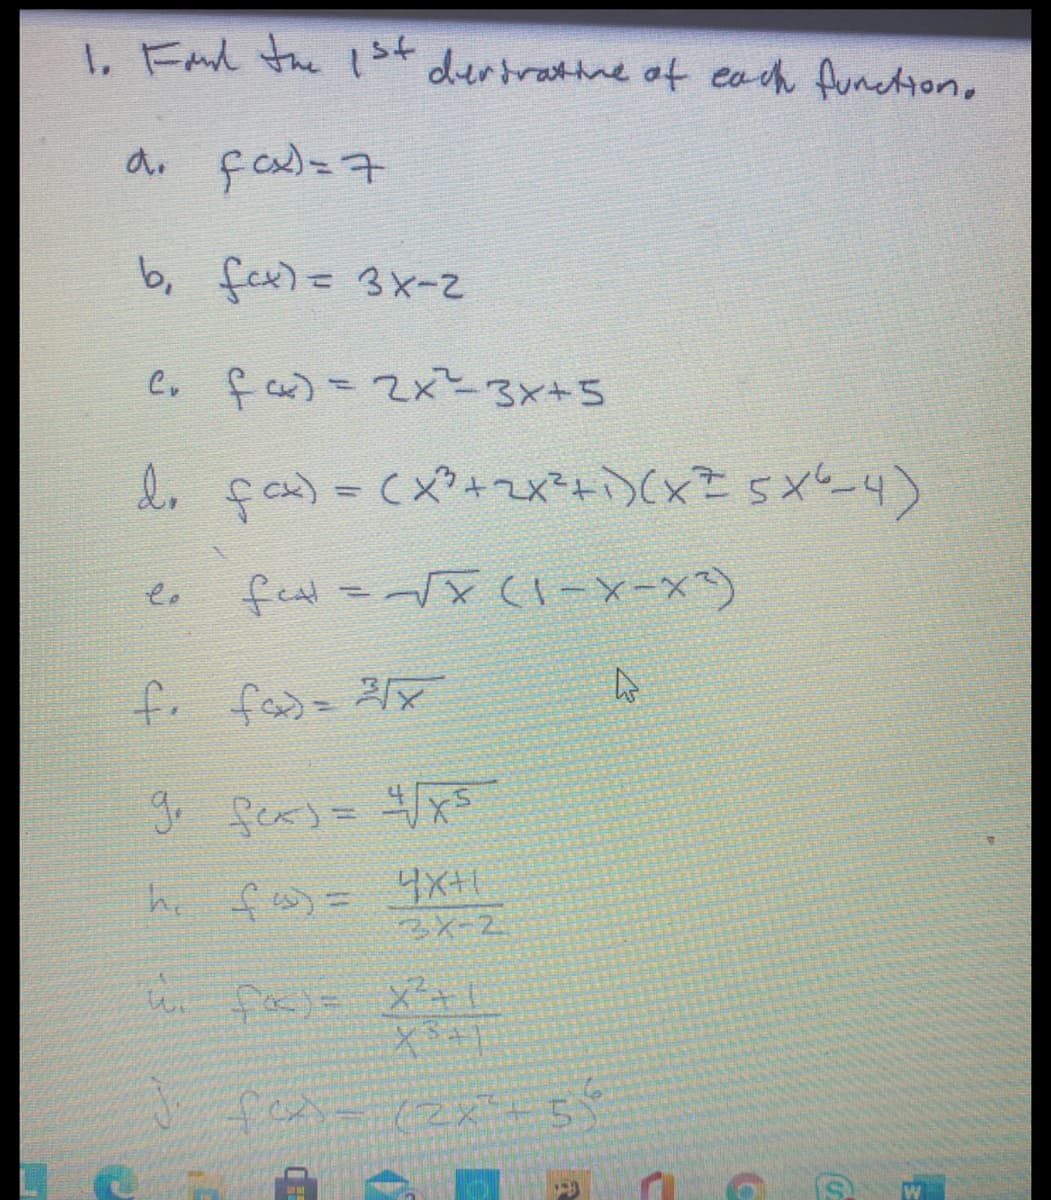 1, Fand the lst
dertratine of eoch function,
b, fer)= 3x-
Co f c) =2x 3x+5
e, gas=cx+2x*ャン(xE 5x-4)
%3D
メに け
he fs) =
4x+1
3メ-2.
いfrj= ×?+1
